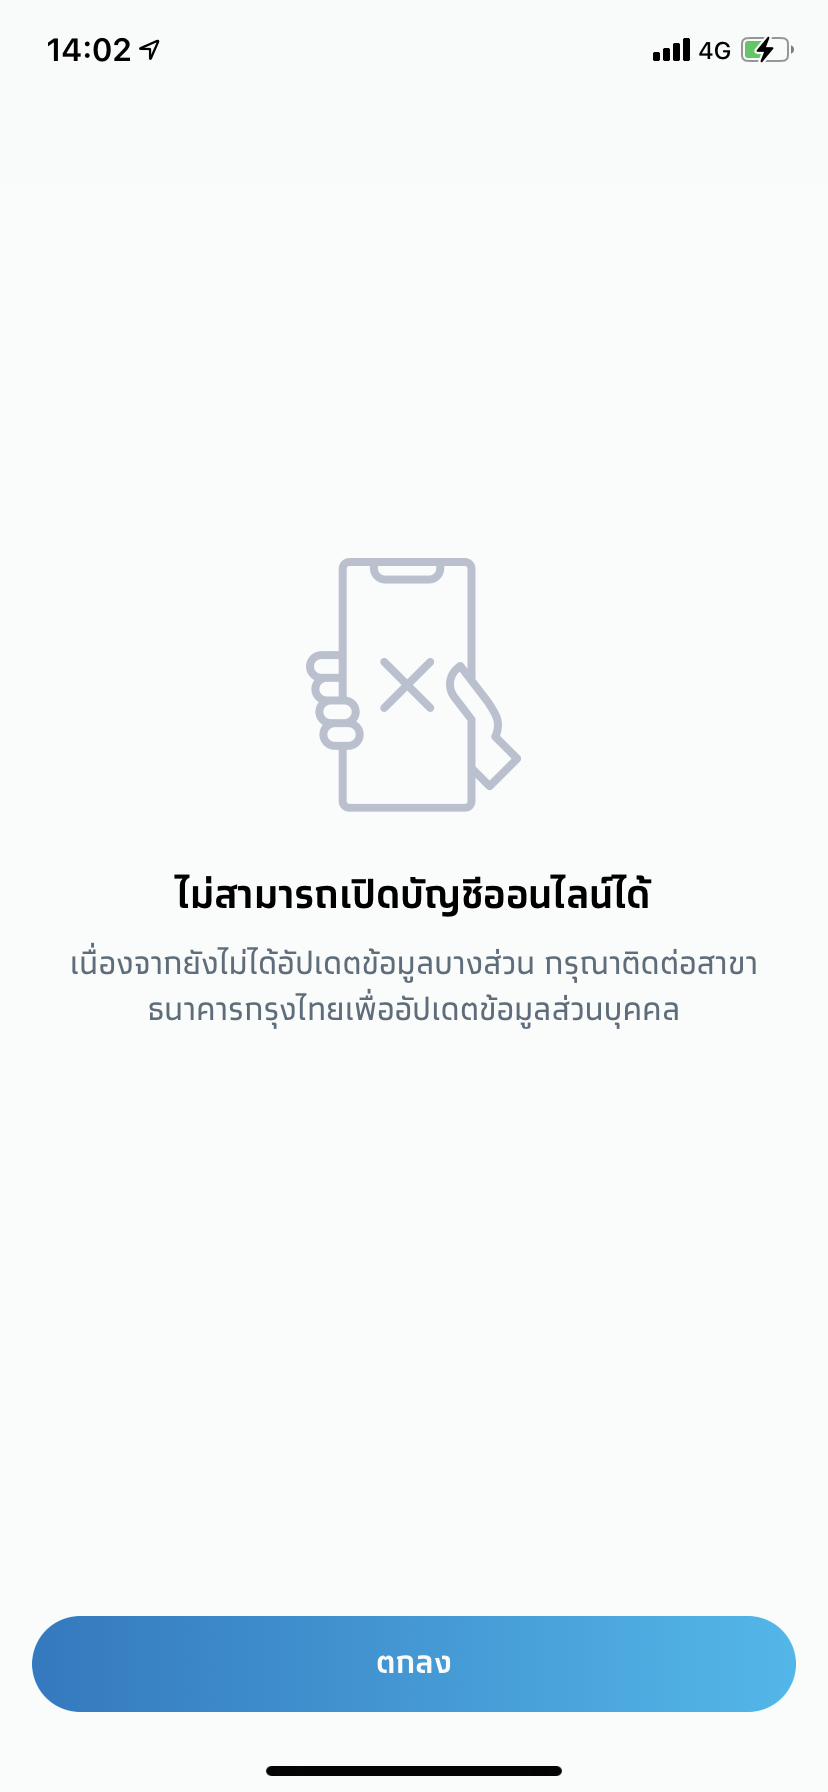 เปิดบัญชีออนไลน์ของกรุงไทยไม่ได้ ทำไงดีครับ - Pantip